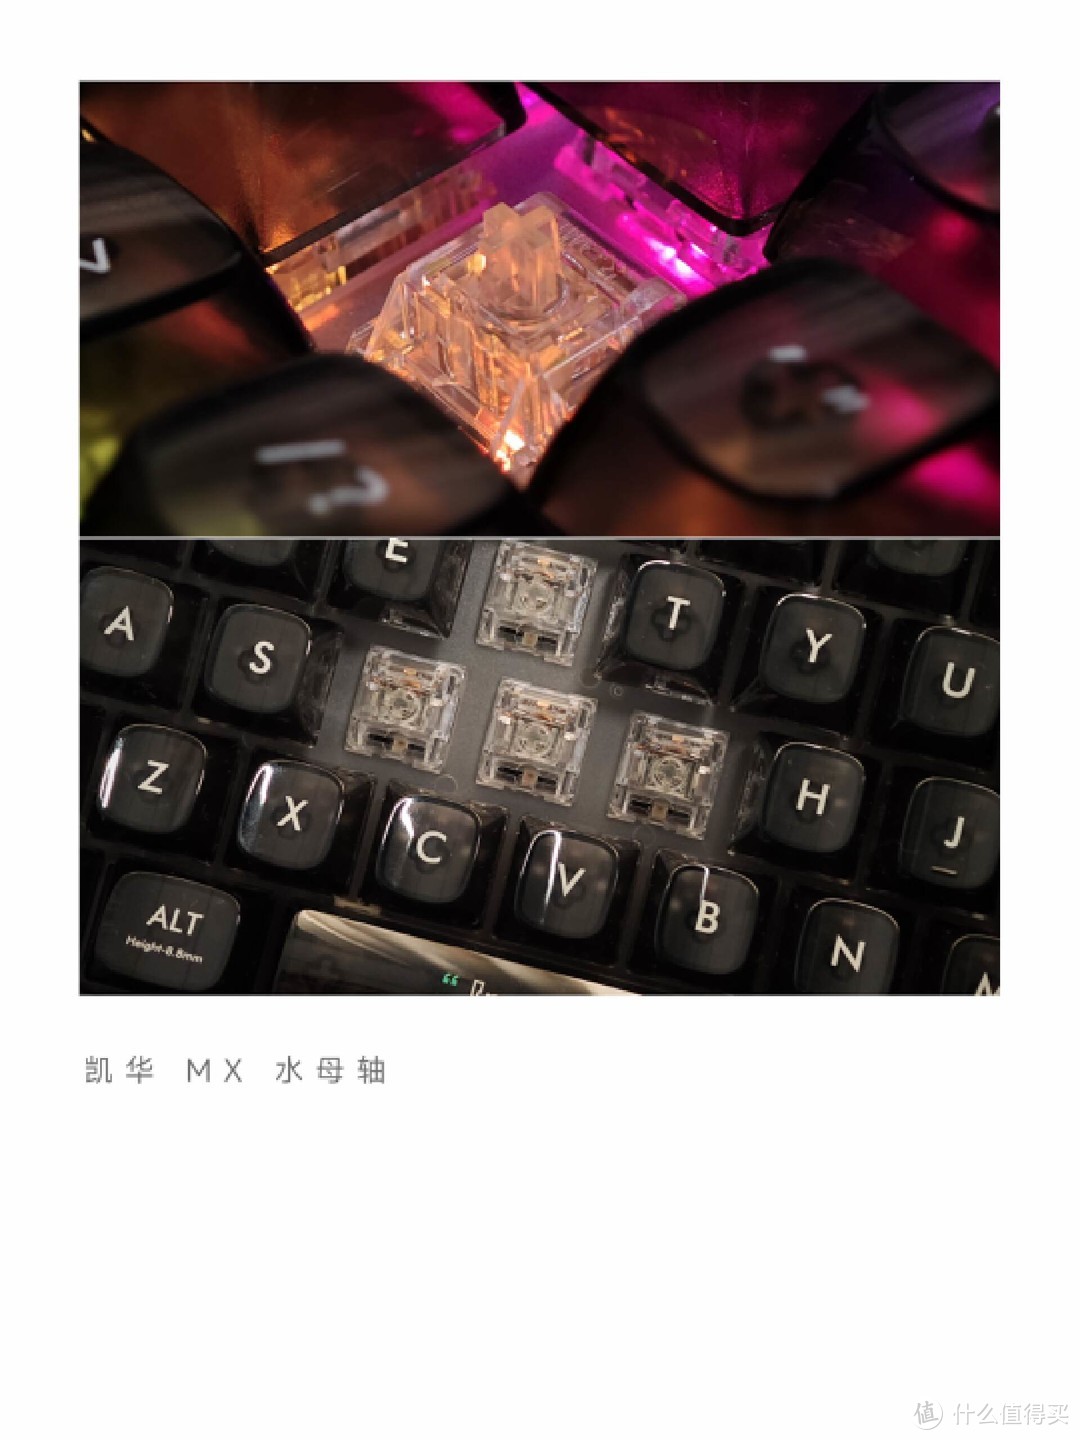 高颜值黑透「米物BlackIO机械键盘」，小米有品米粉节触底价！